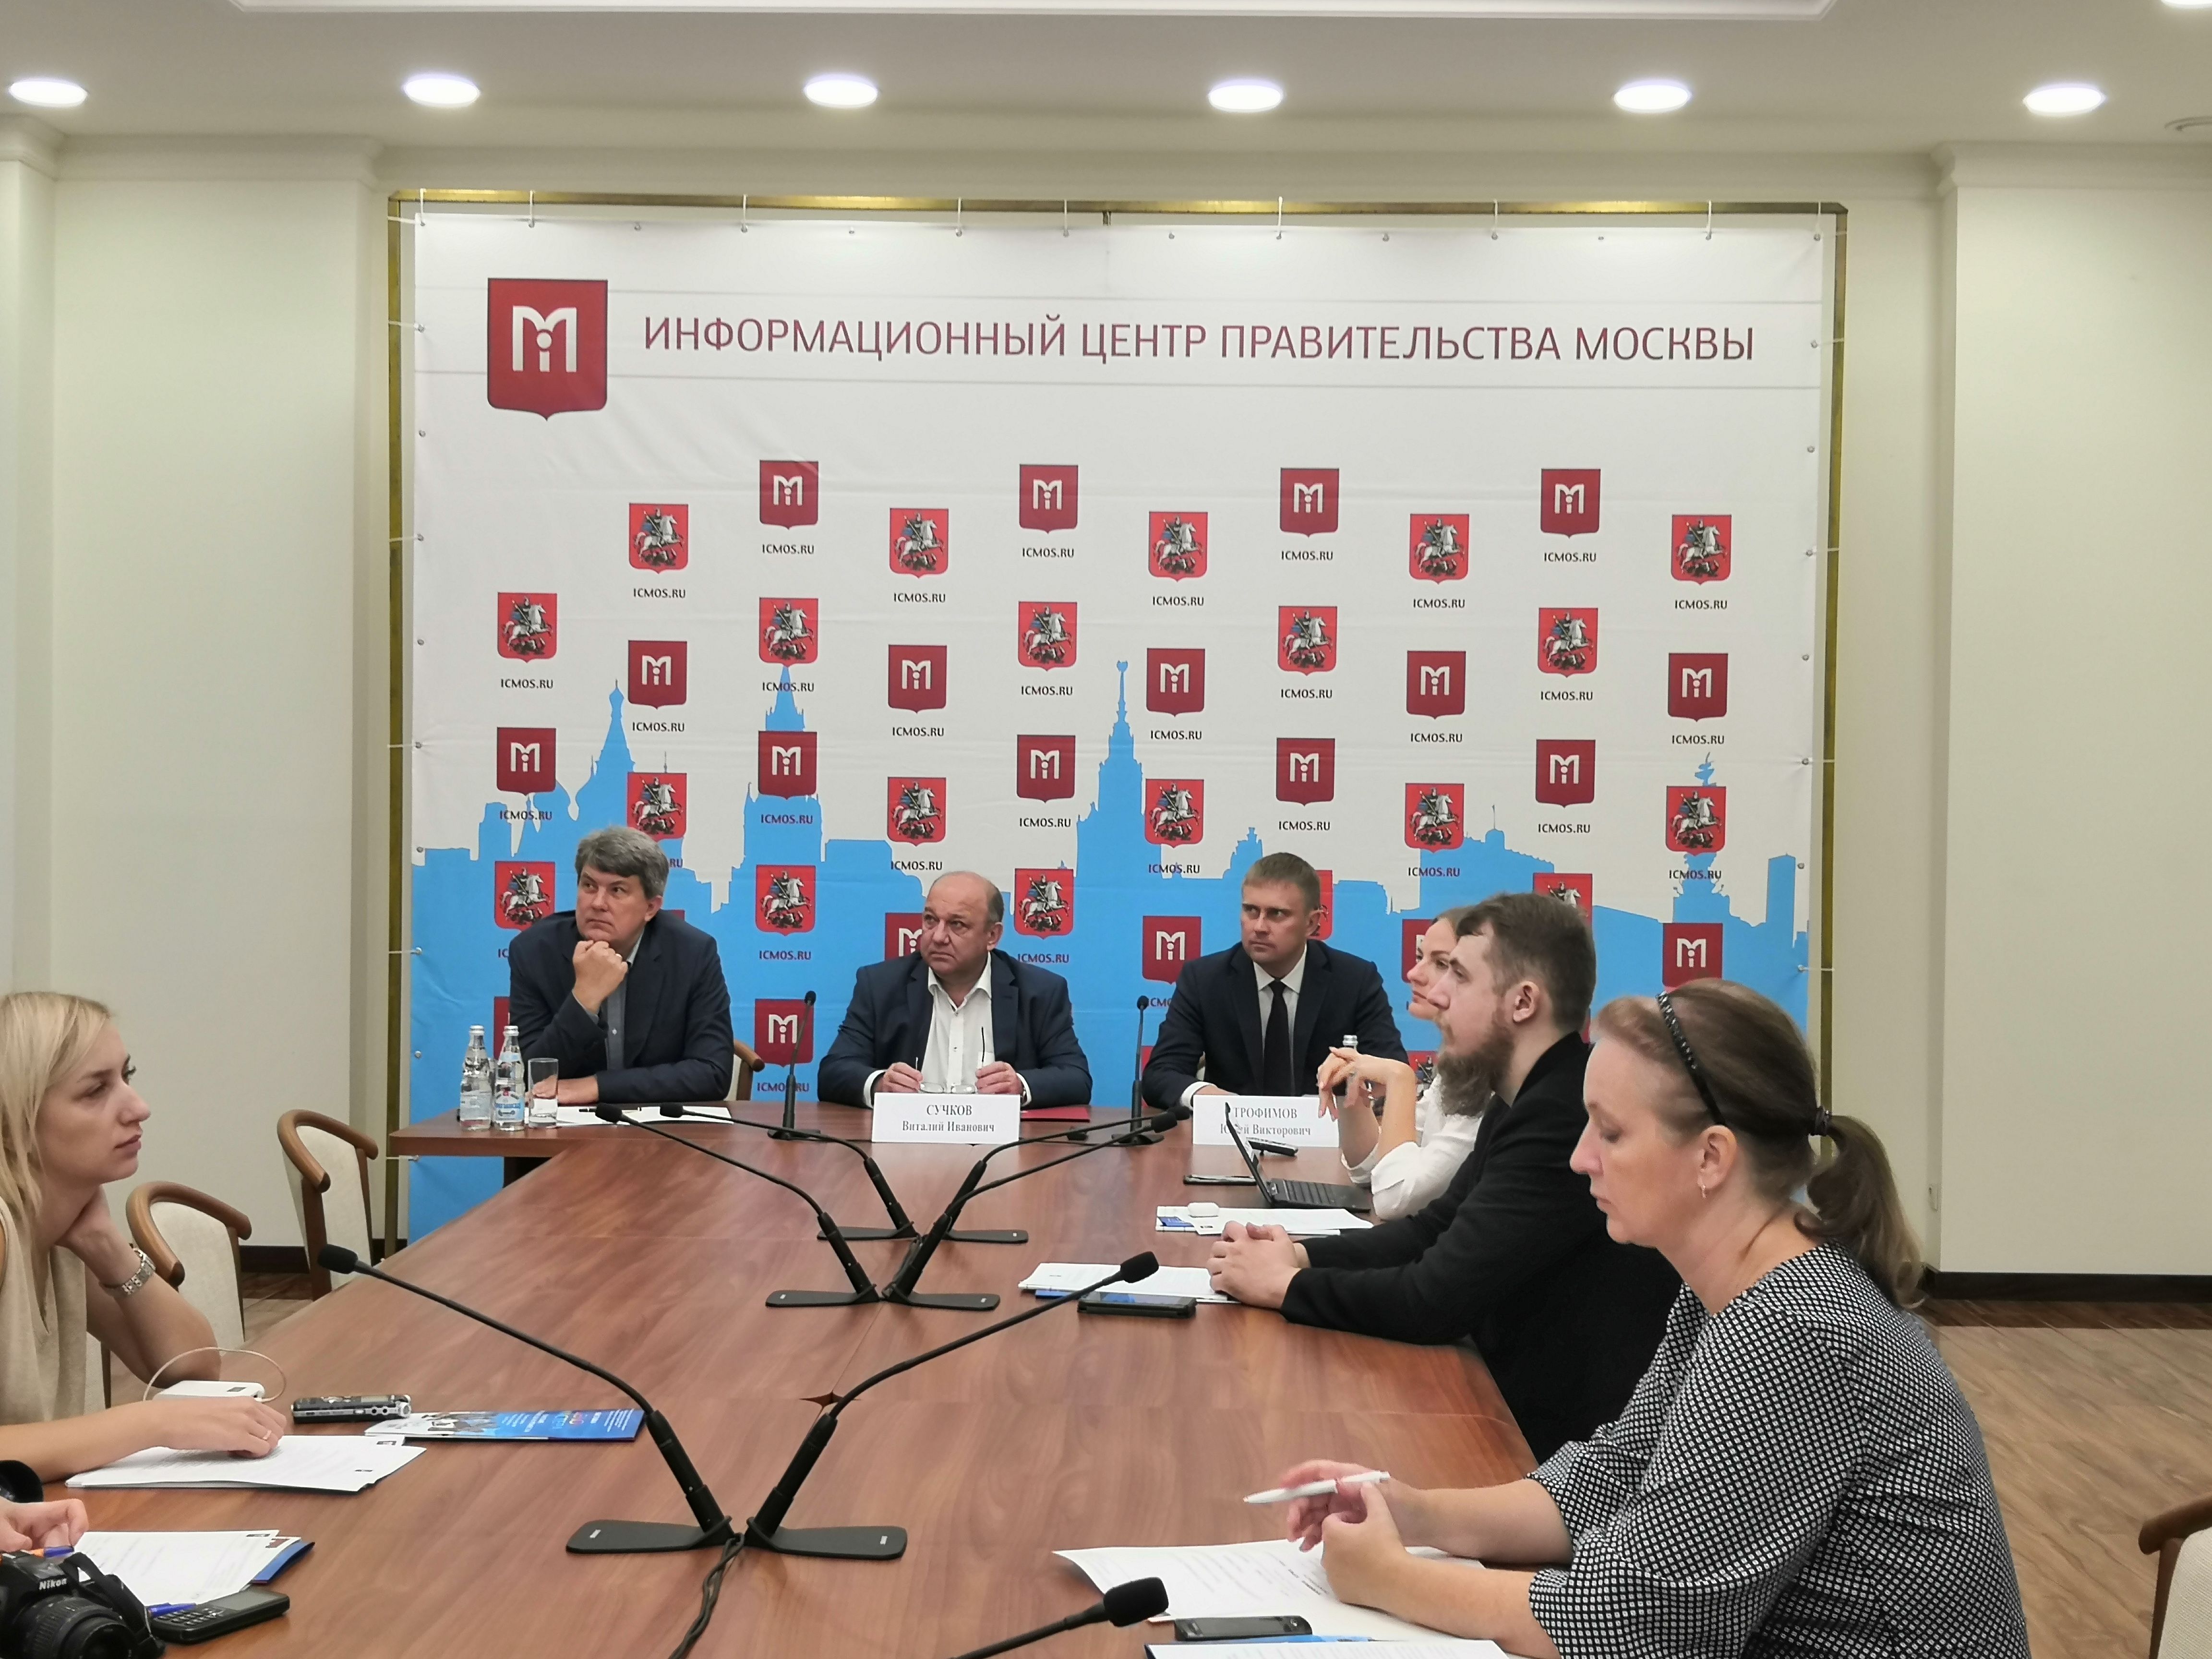 Пресс-конференцию провели в Правительстве Москвы. Фото: Зифа Хакимзянова